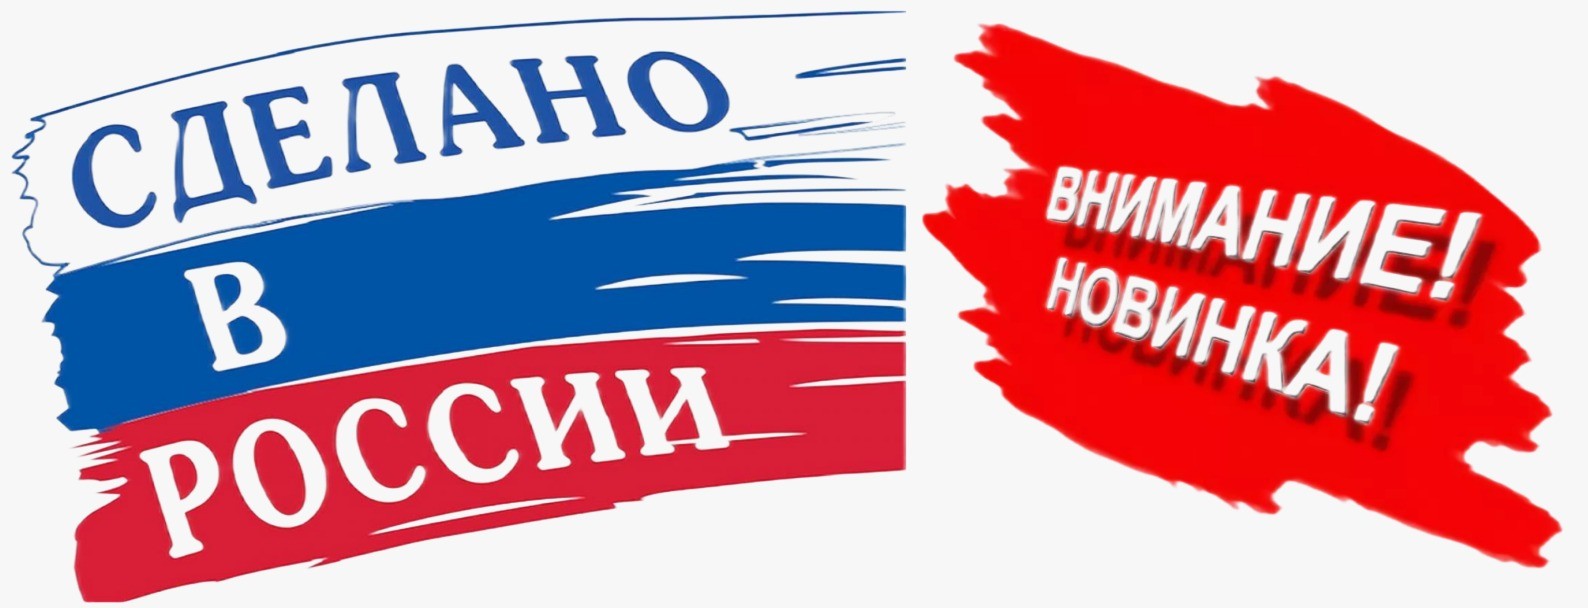 рекламный баннер, сделано в России